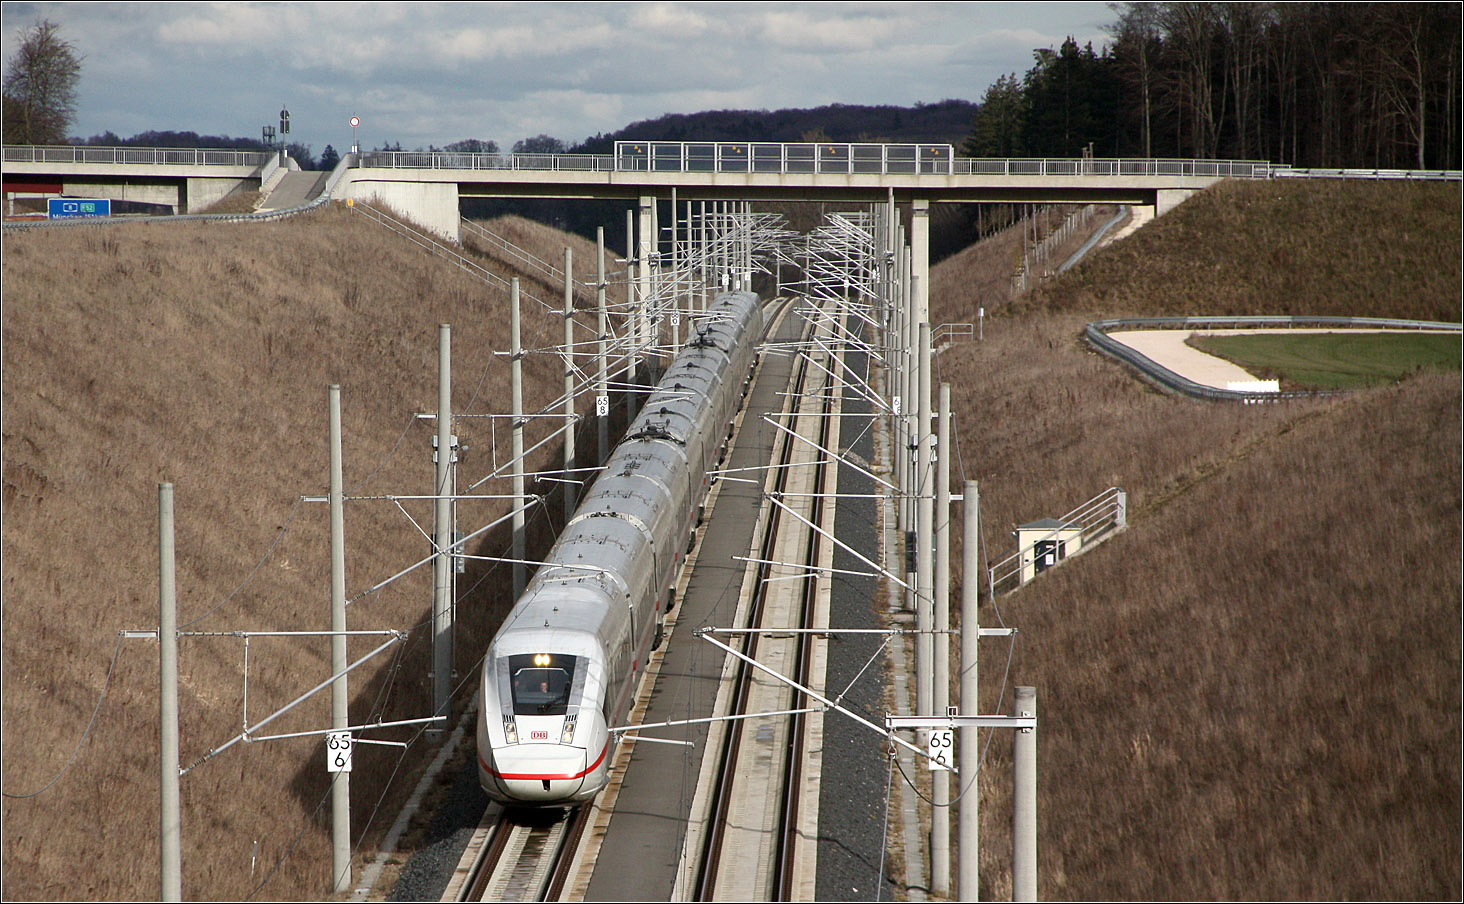 Wenn die Schmalspurbahn noch fahren würde -

... wäre es da vielleicht möglich gewesen, den Bahnhof 'Merklingen - Schwäbische Alb' an dieser Stelle nordöstlich von Merklingen anzulegen. So hätte hier direkt von der Schmalsbahn in den schnellen IRE umgestiegen werden können und damit hätte diese Bähnle neue Bedeutung gewinnen können.
Blick vom Ostportal des Merklinger Tunnels auf einen in Richtung Stuttgart fahrenden ICE 4.

14.03.2022 (M)